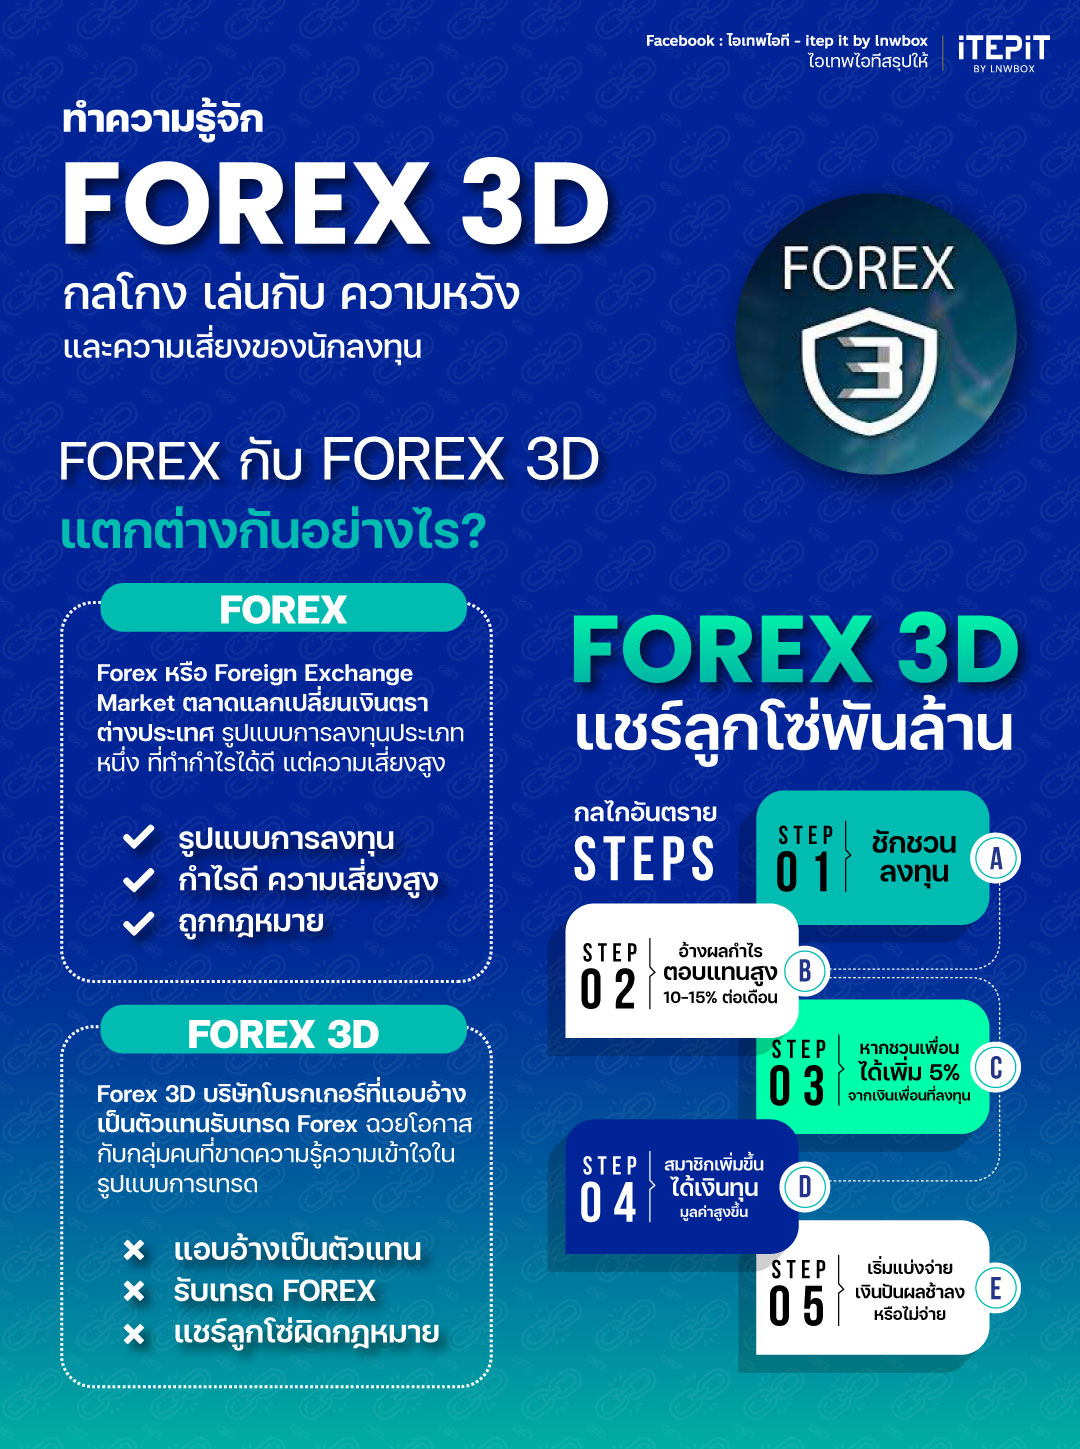 Forex 3D - ไอเทพไอทีสรุปให้